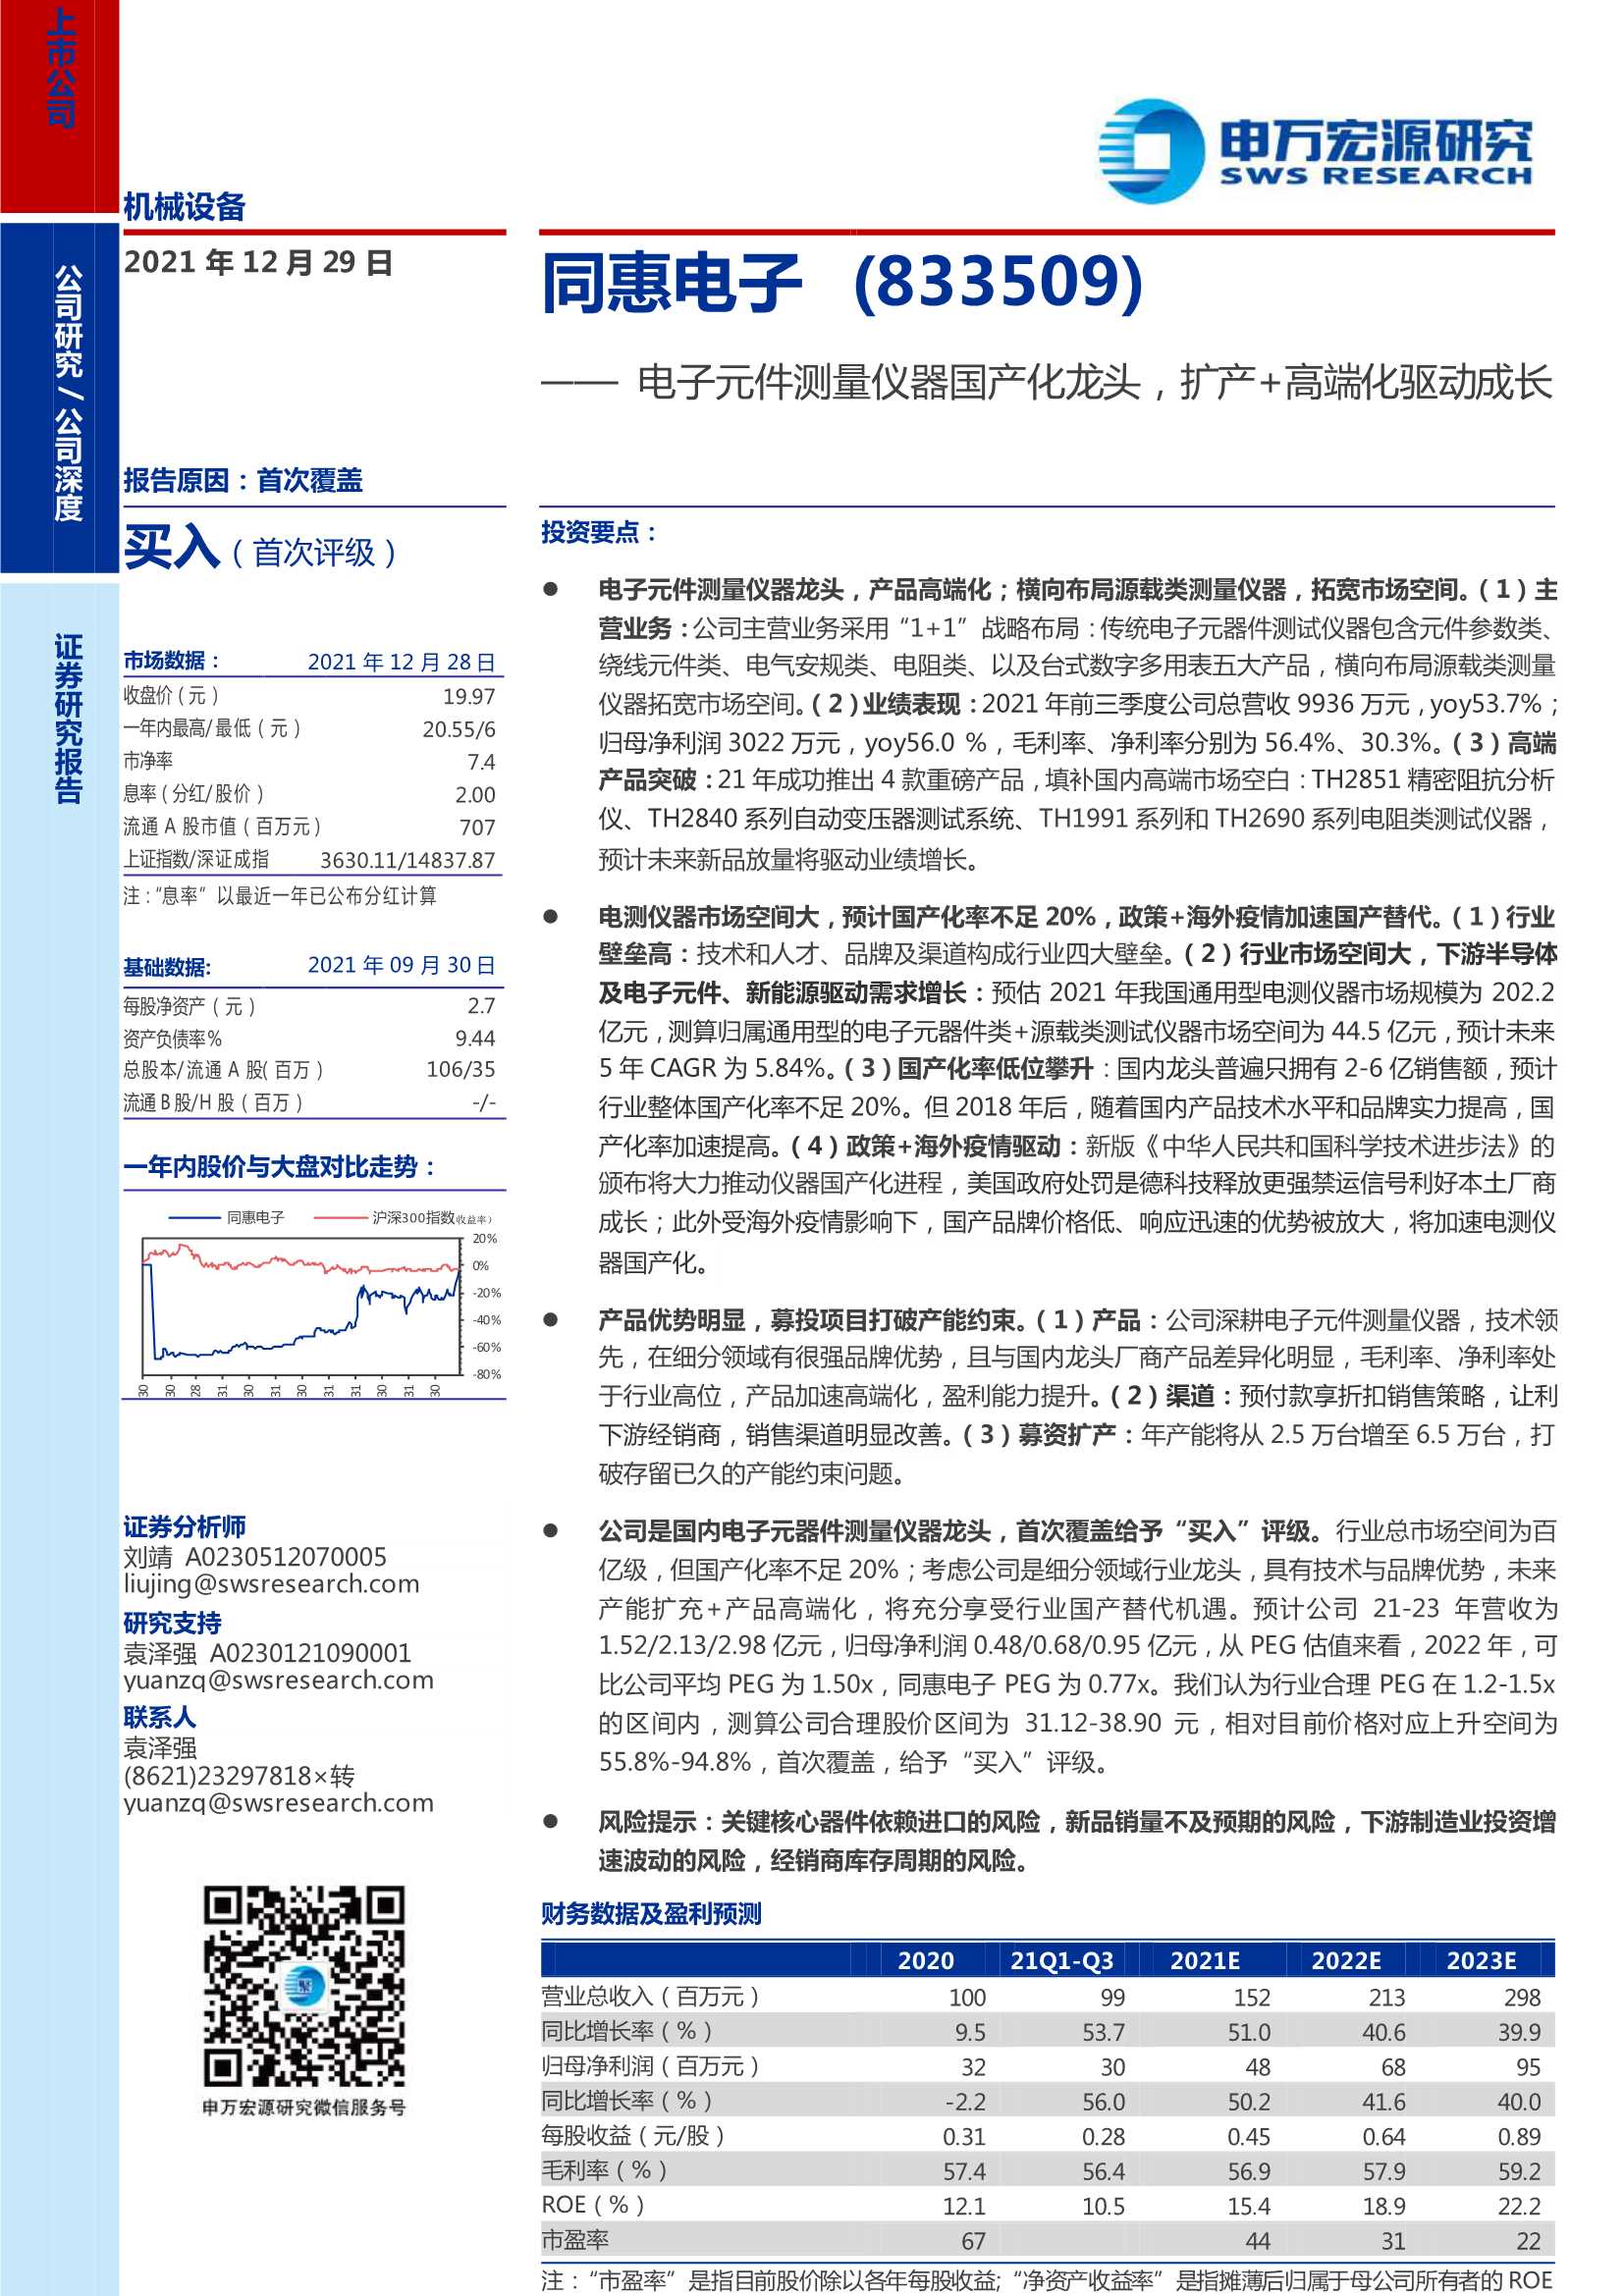 申万宏源-同惠电子-833509-电子元件测量仪器国产化龙头，扩产 高端化驱动成长-20211229-36页